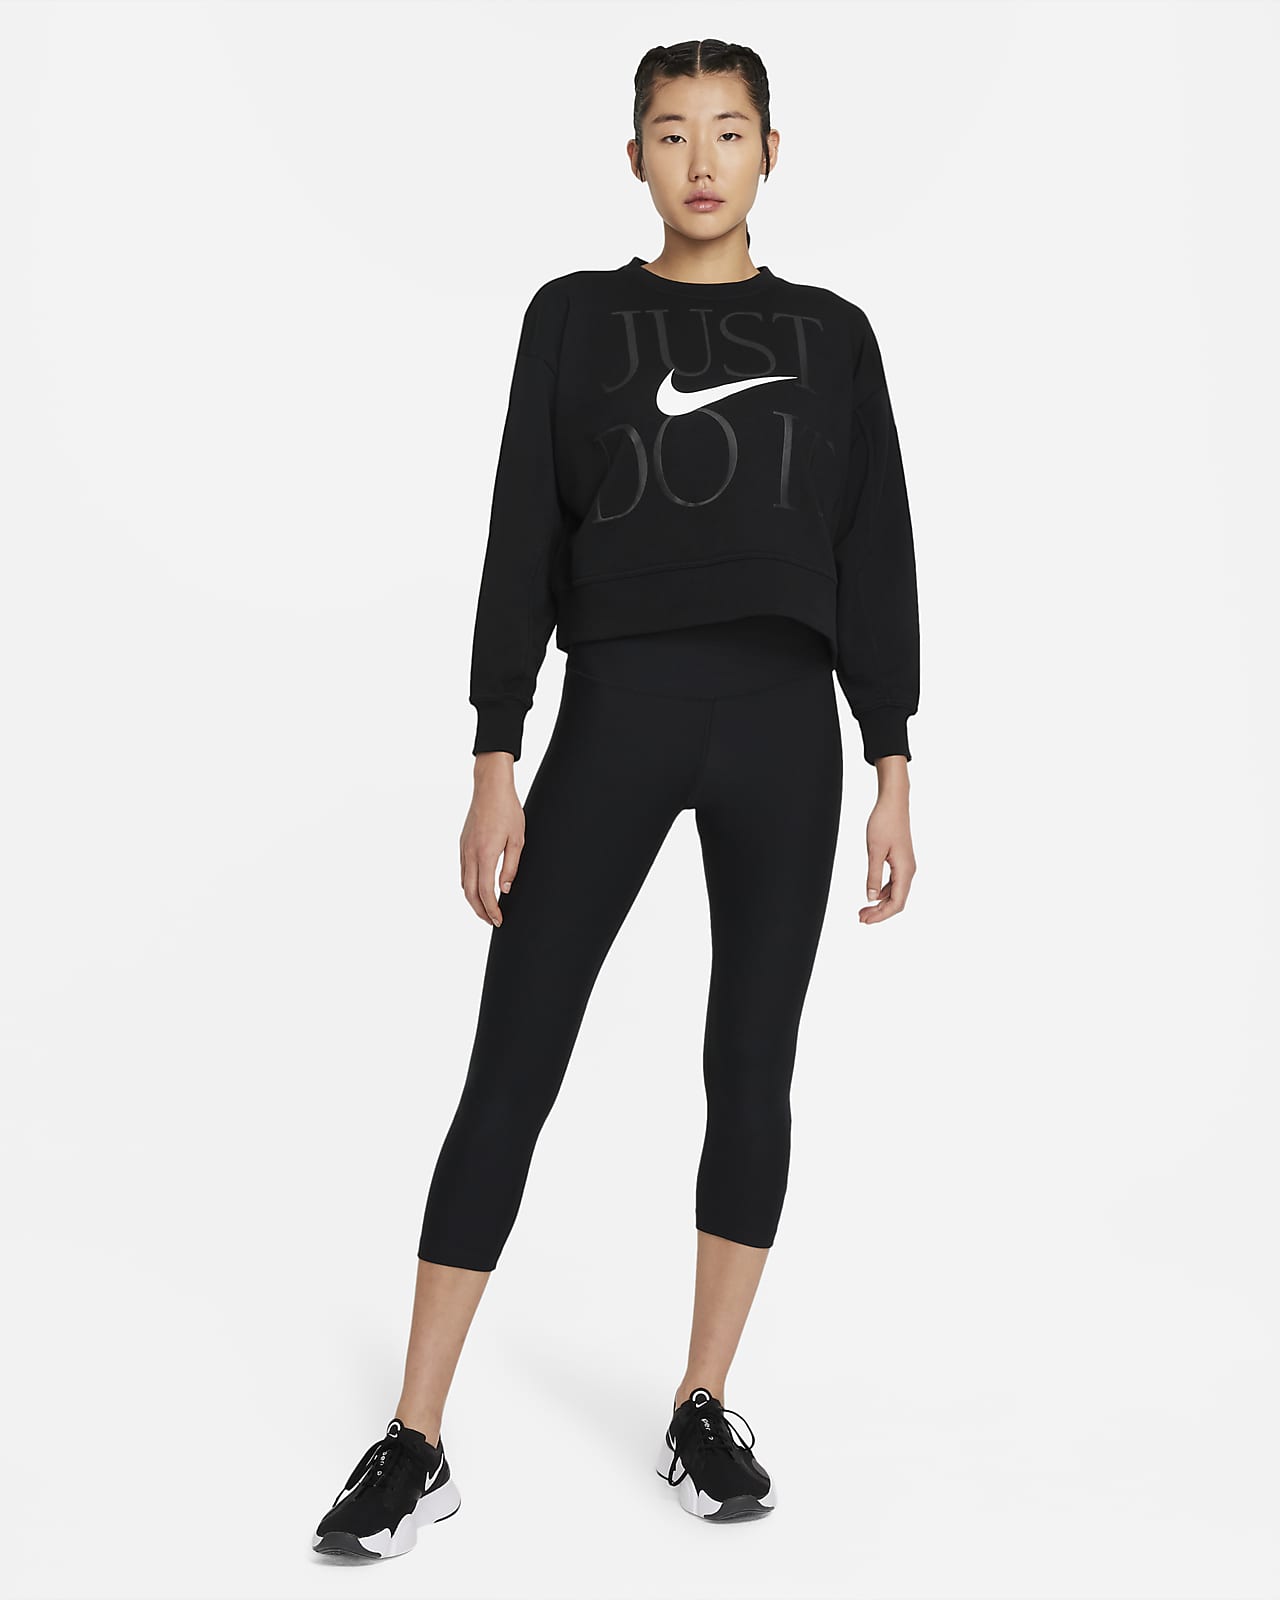 Nike Dri-FIT Get Fit Women’s Training Crew